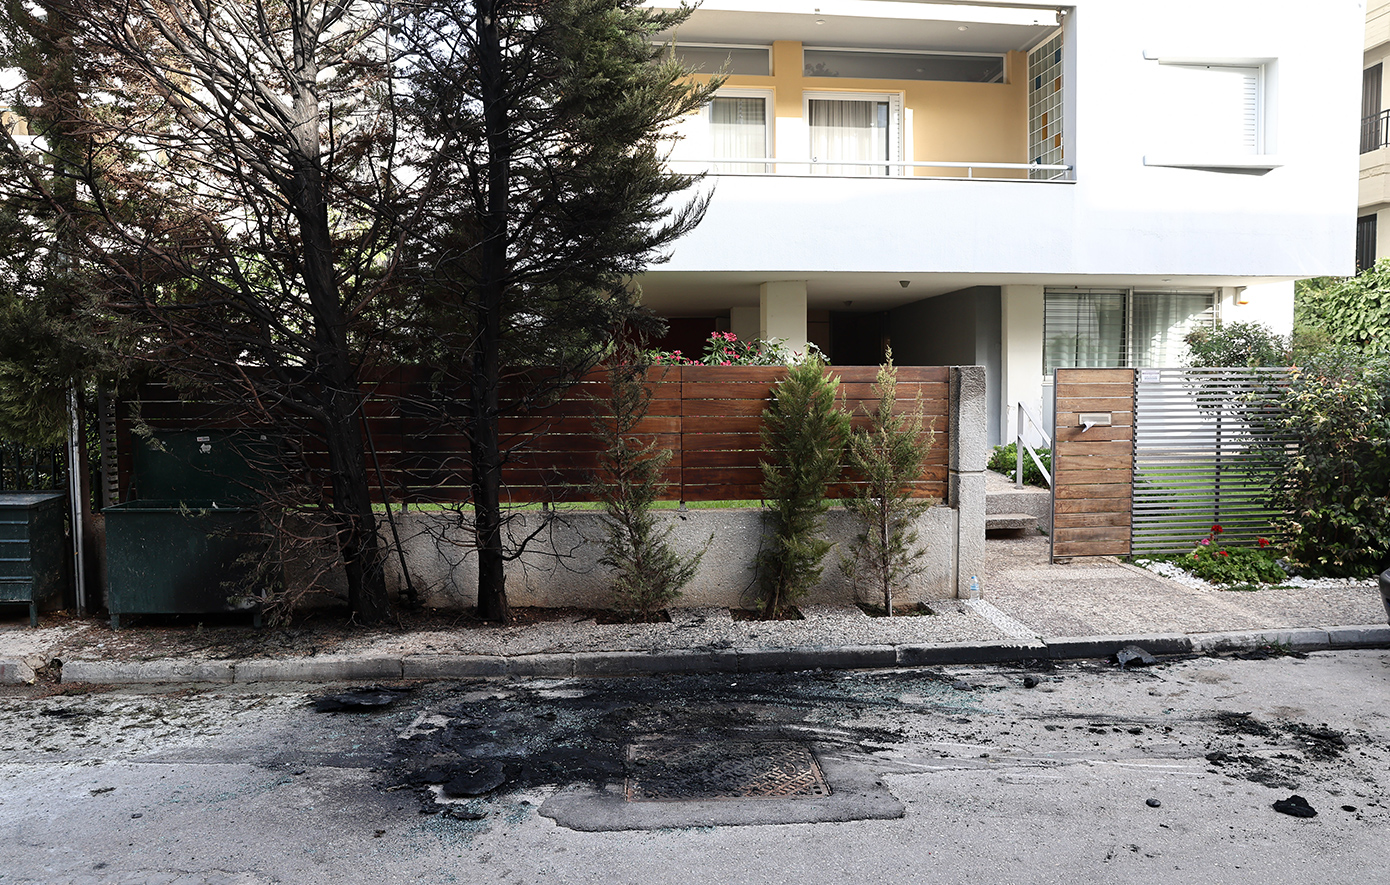 Επίθεση με μολότοφ έξω από το σπίτι της προέδρου του Αρείου Πάγου, τραυματίστηκε αστυνομικός &#8211; Φωτογραφίες από το σημείο